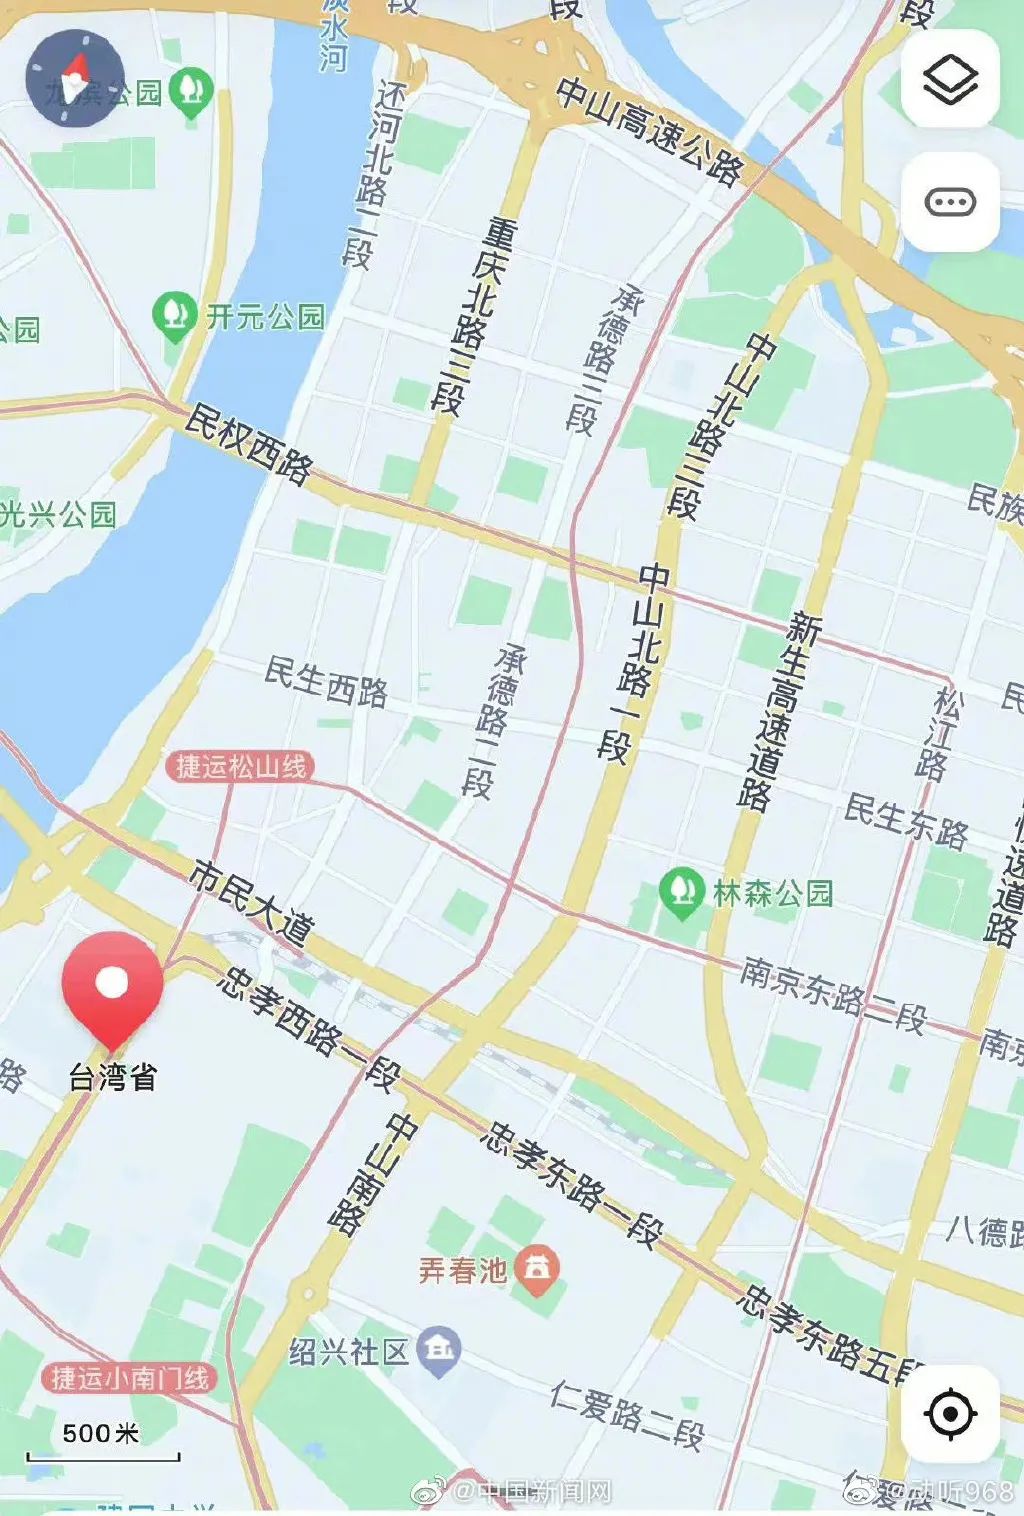 热搜爆了 地图已可显示台湾省每个街道 网友 都是大陆城市的名字